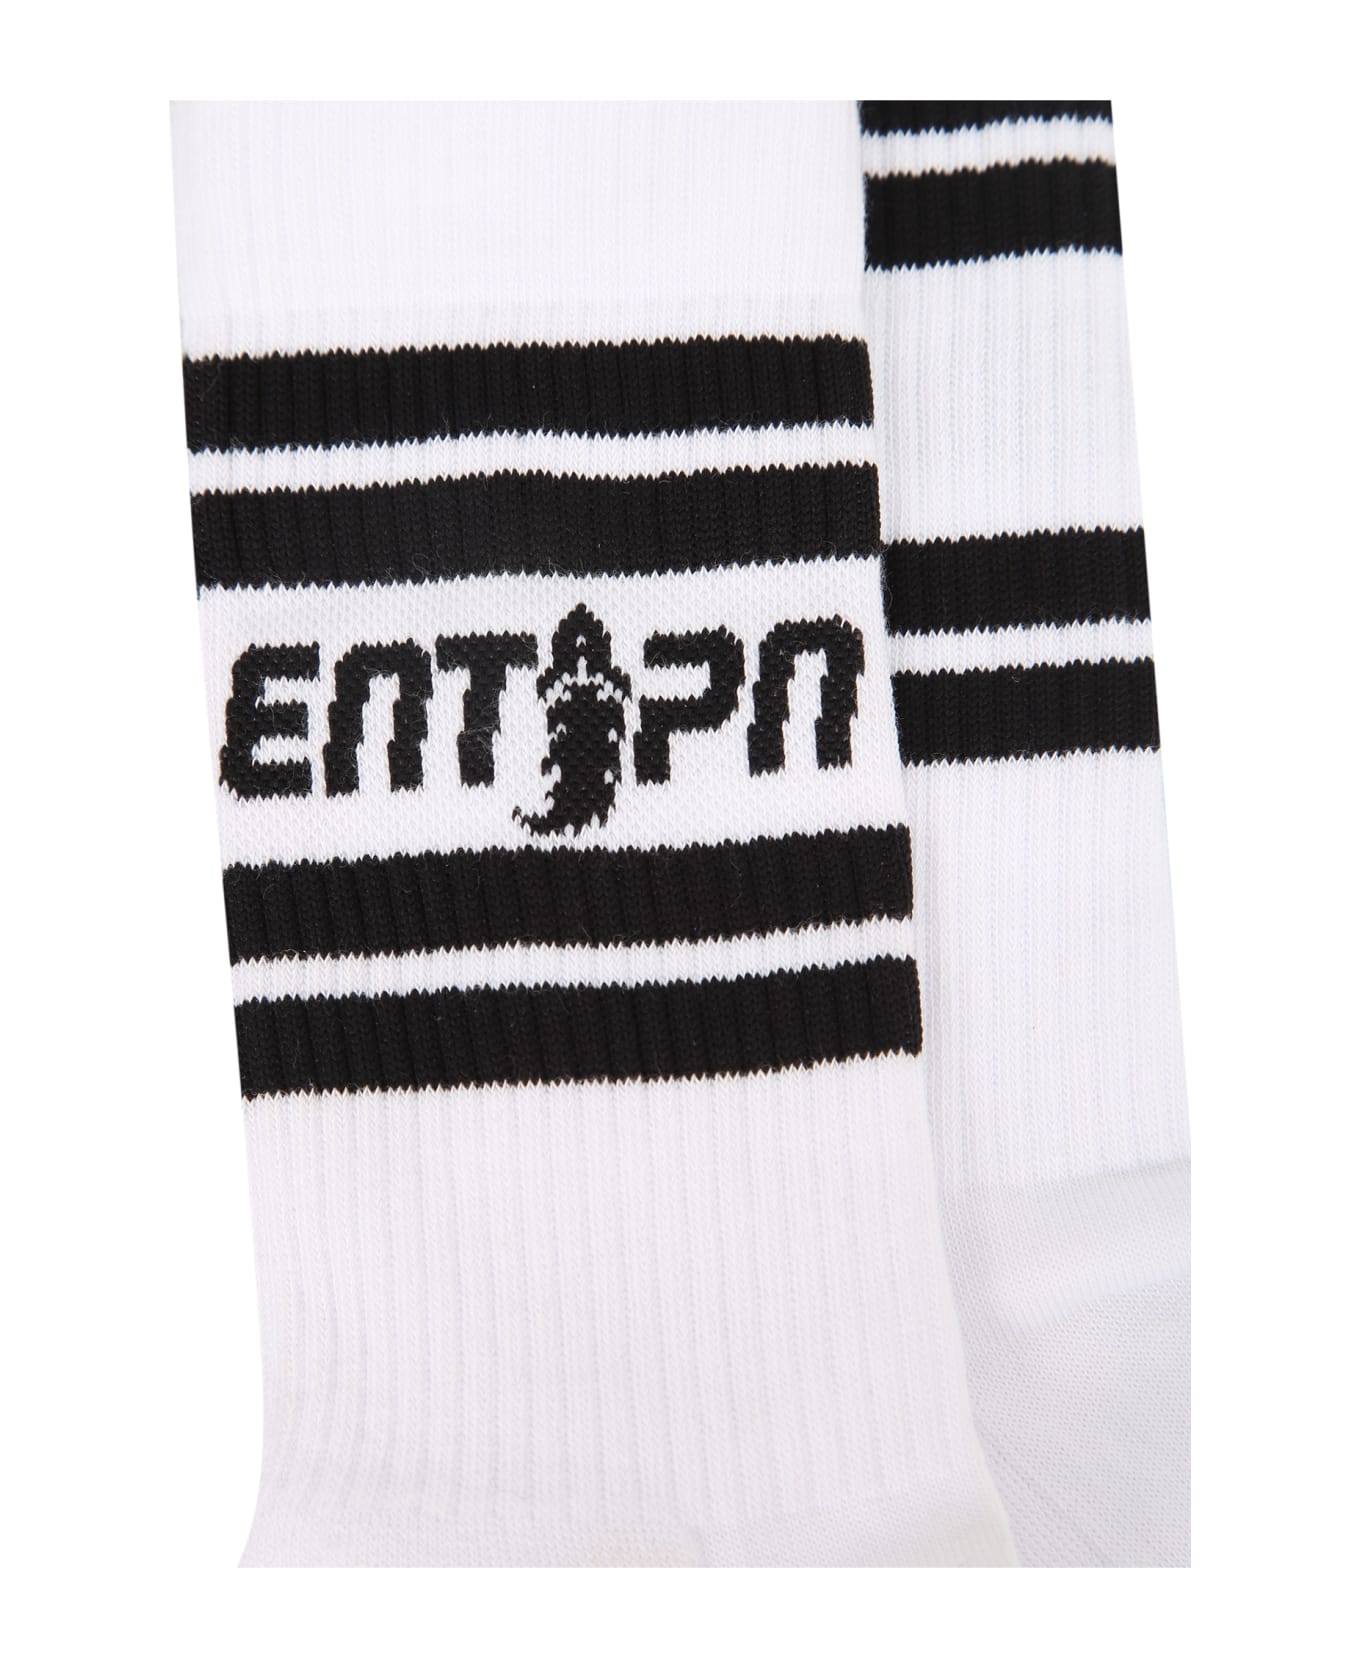 Enterprise Japan Logo Socks - White